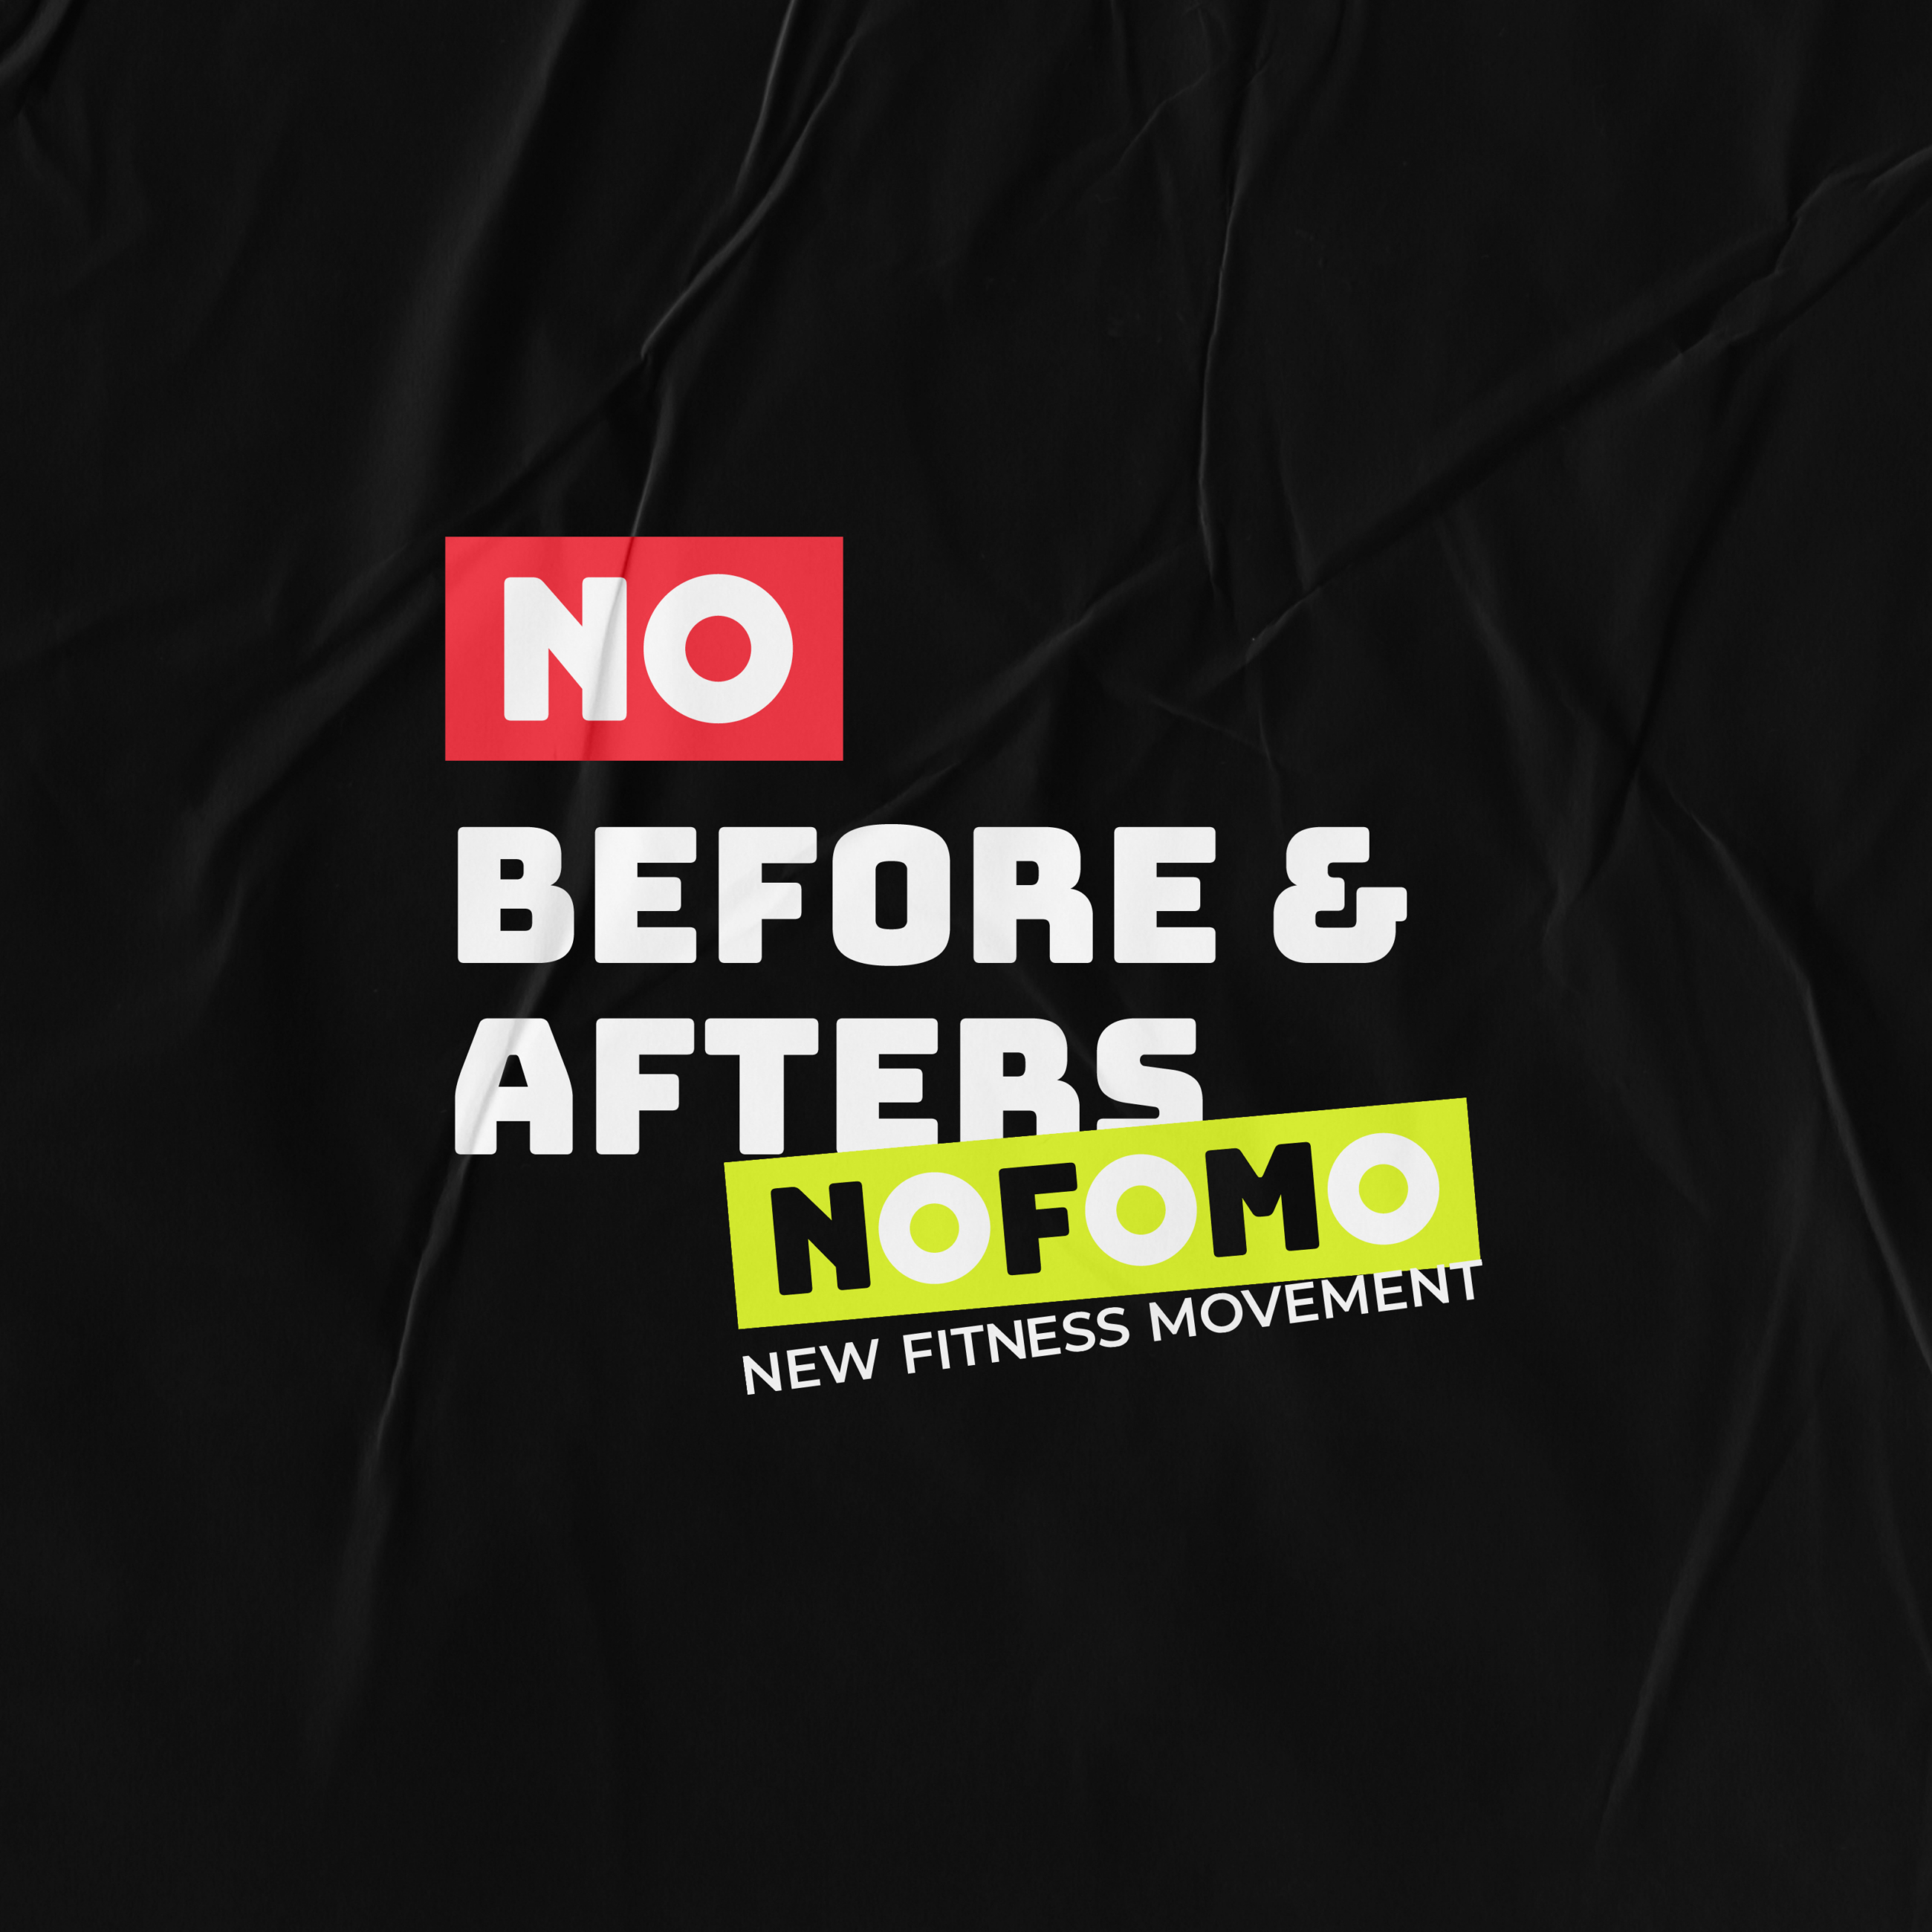 NOFOMO campaign messaging- unique brand identity